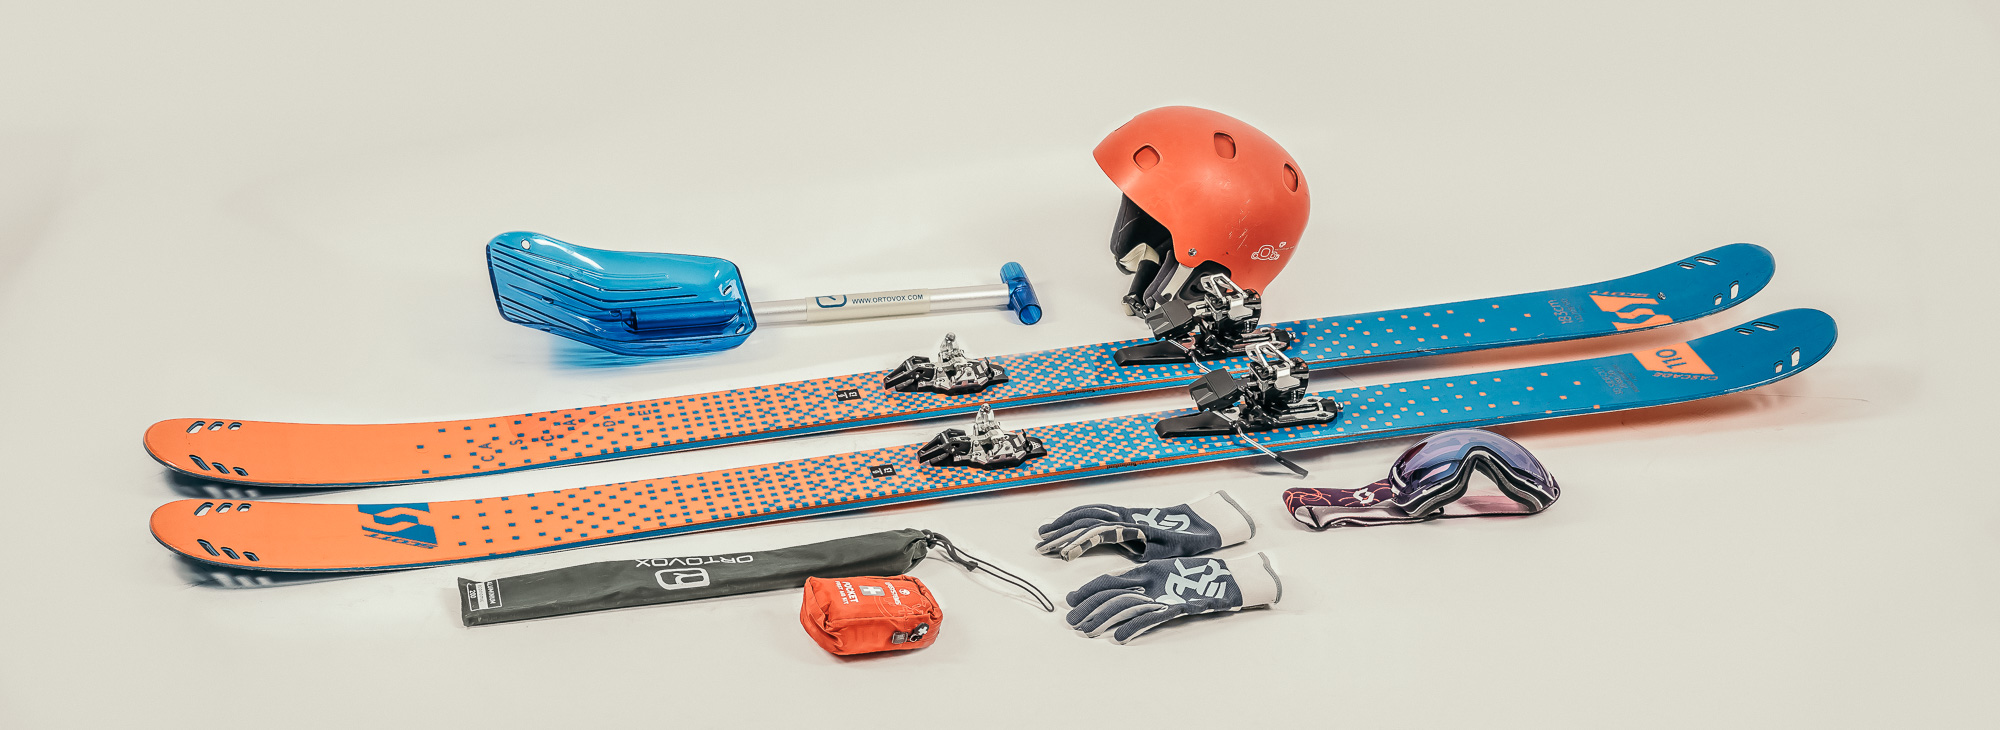 Comment bien choisir son équipement de ski ? - VTR Voyages : Le Blog